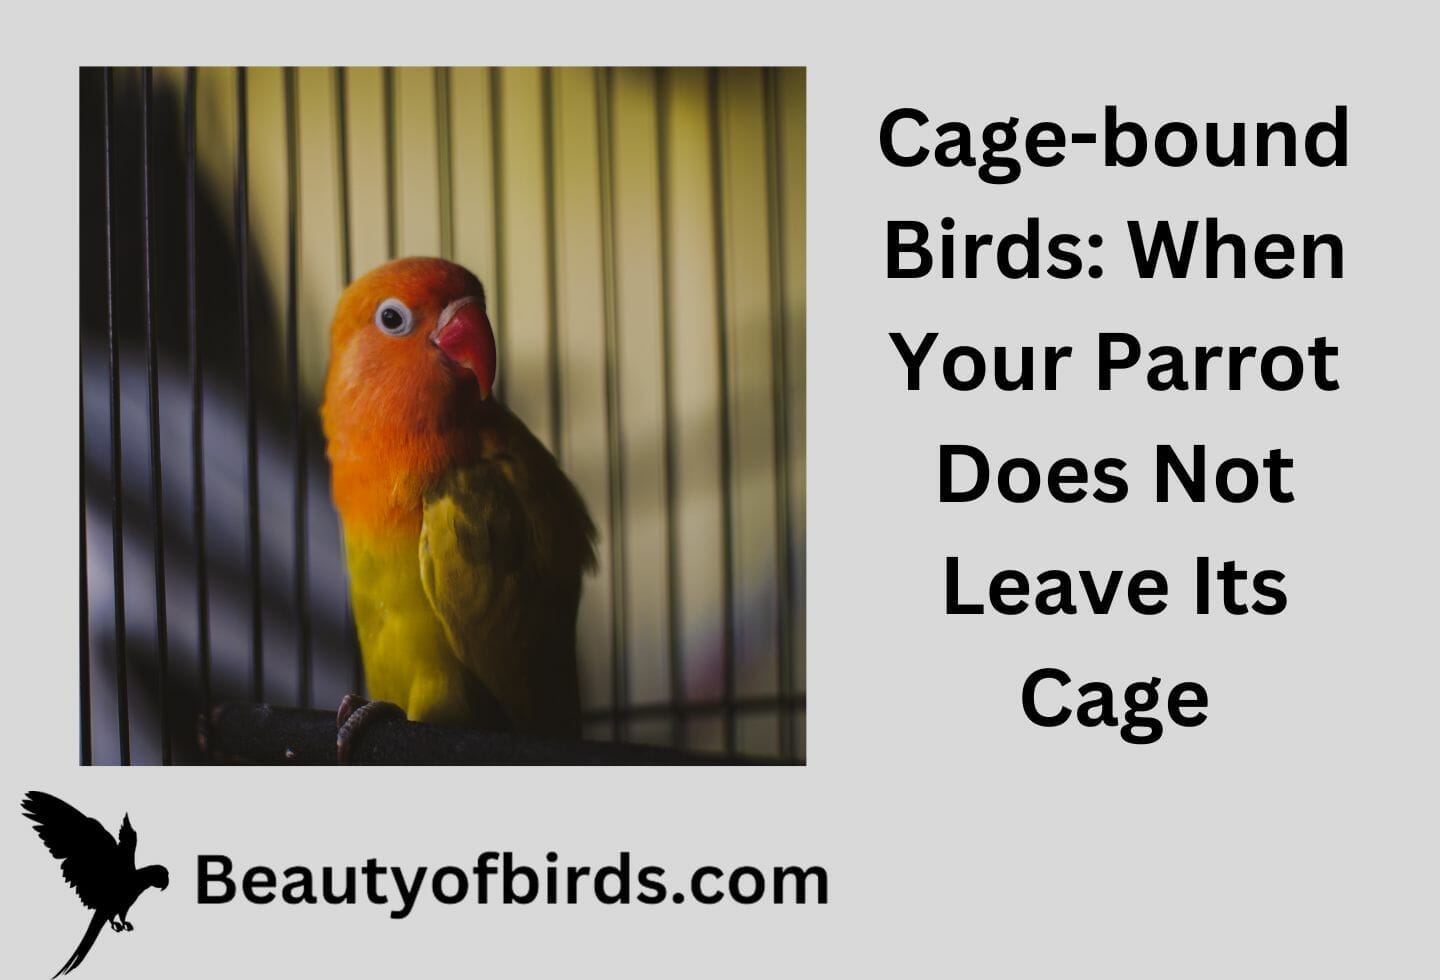 www.beautyofbirds.com